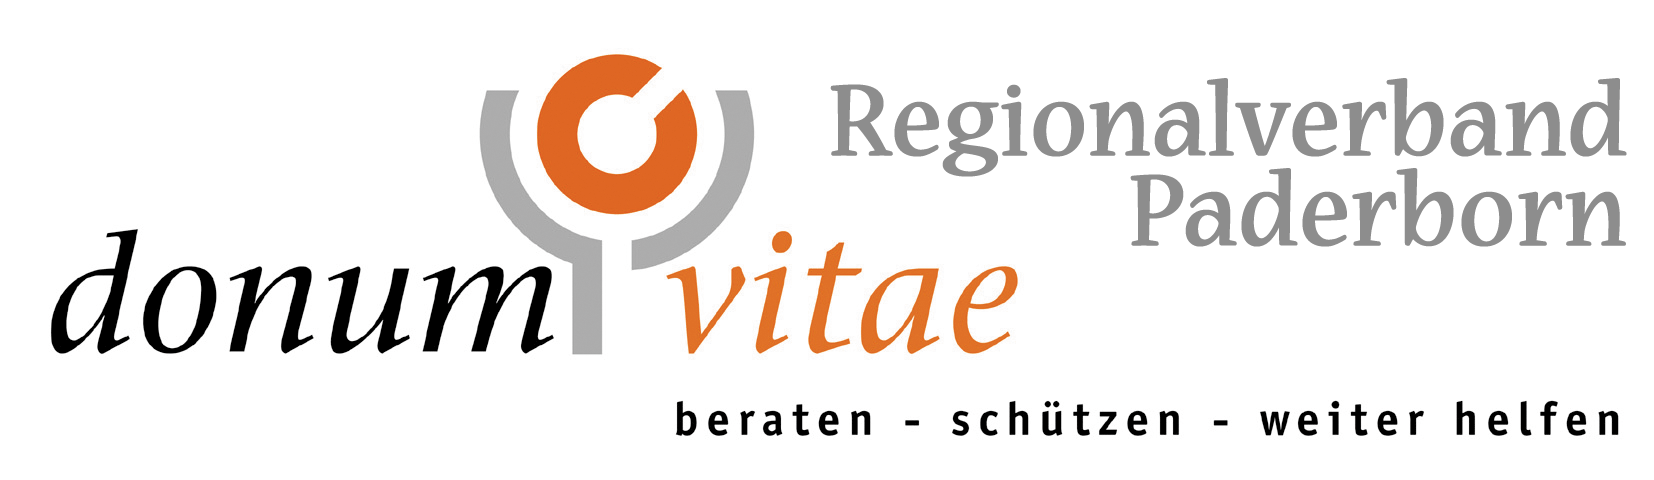 donum vitae - Regionalverband Paderborn